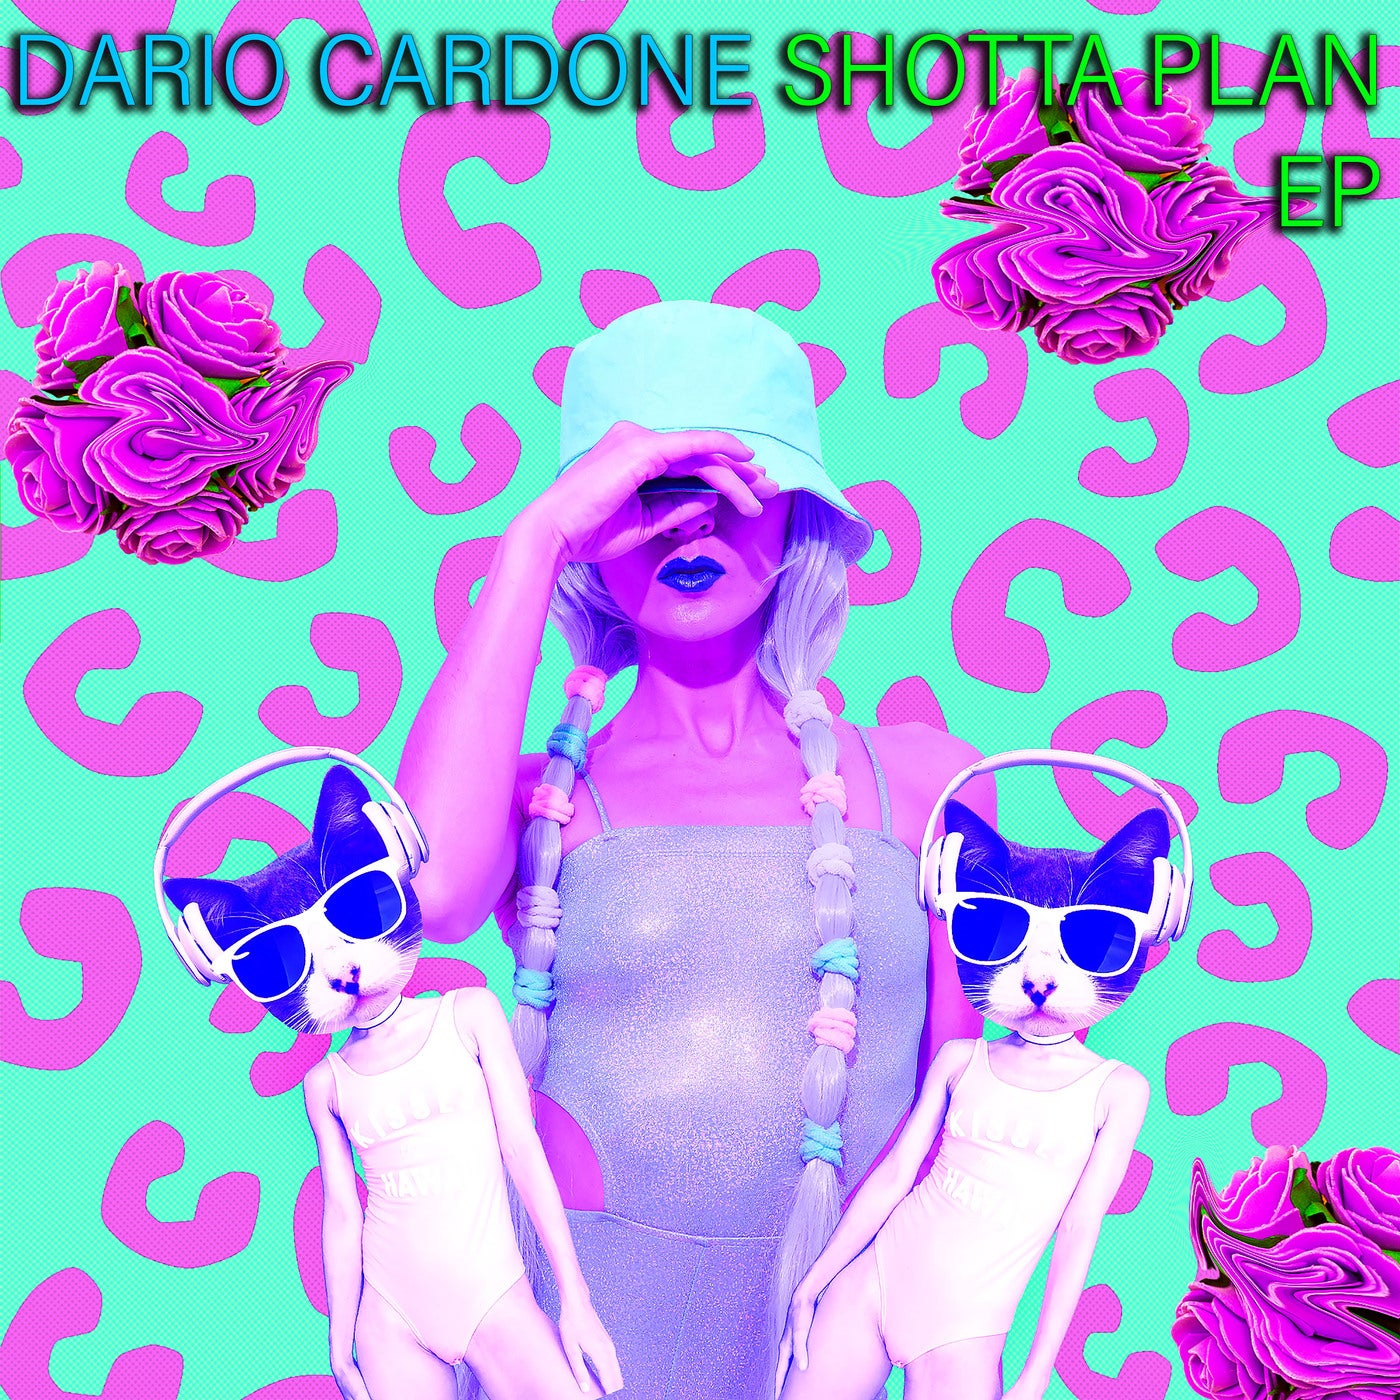 Shotta Plan EP